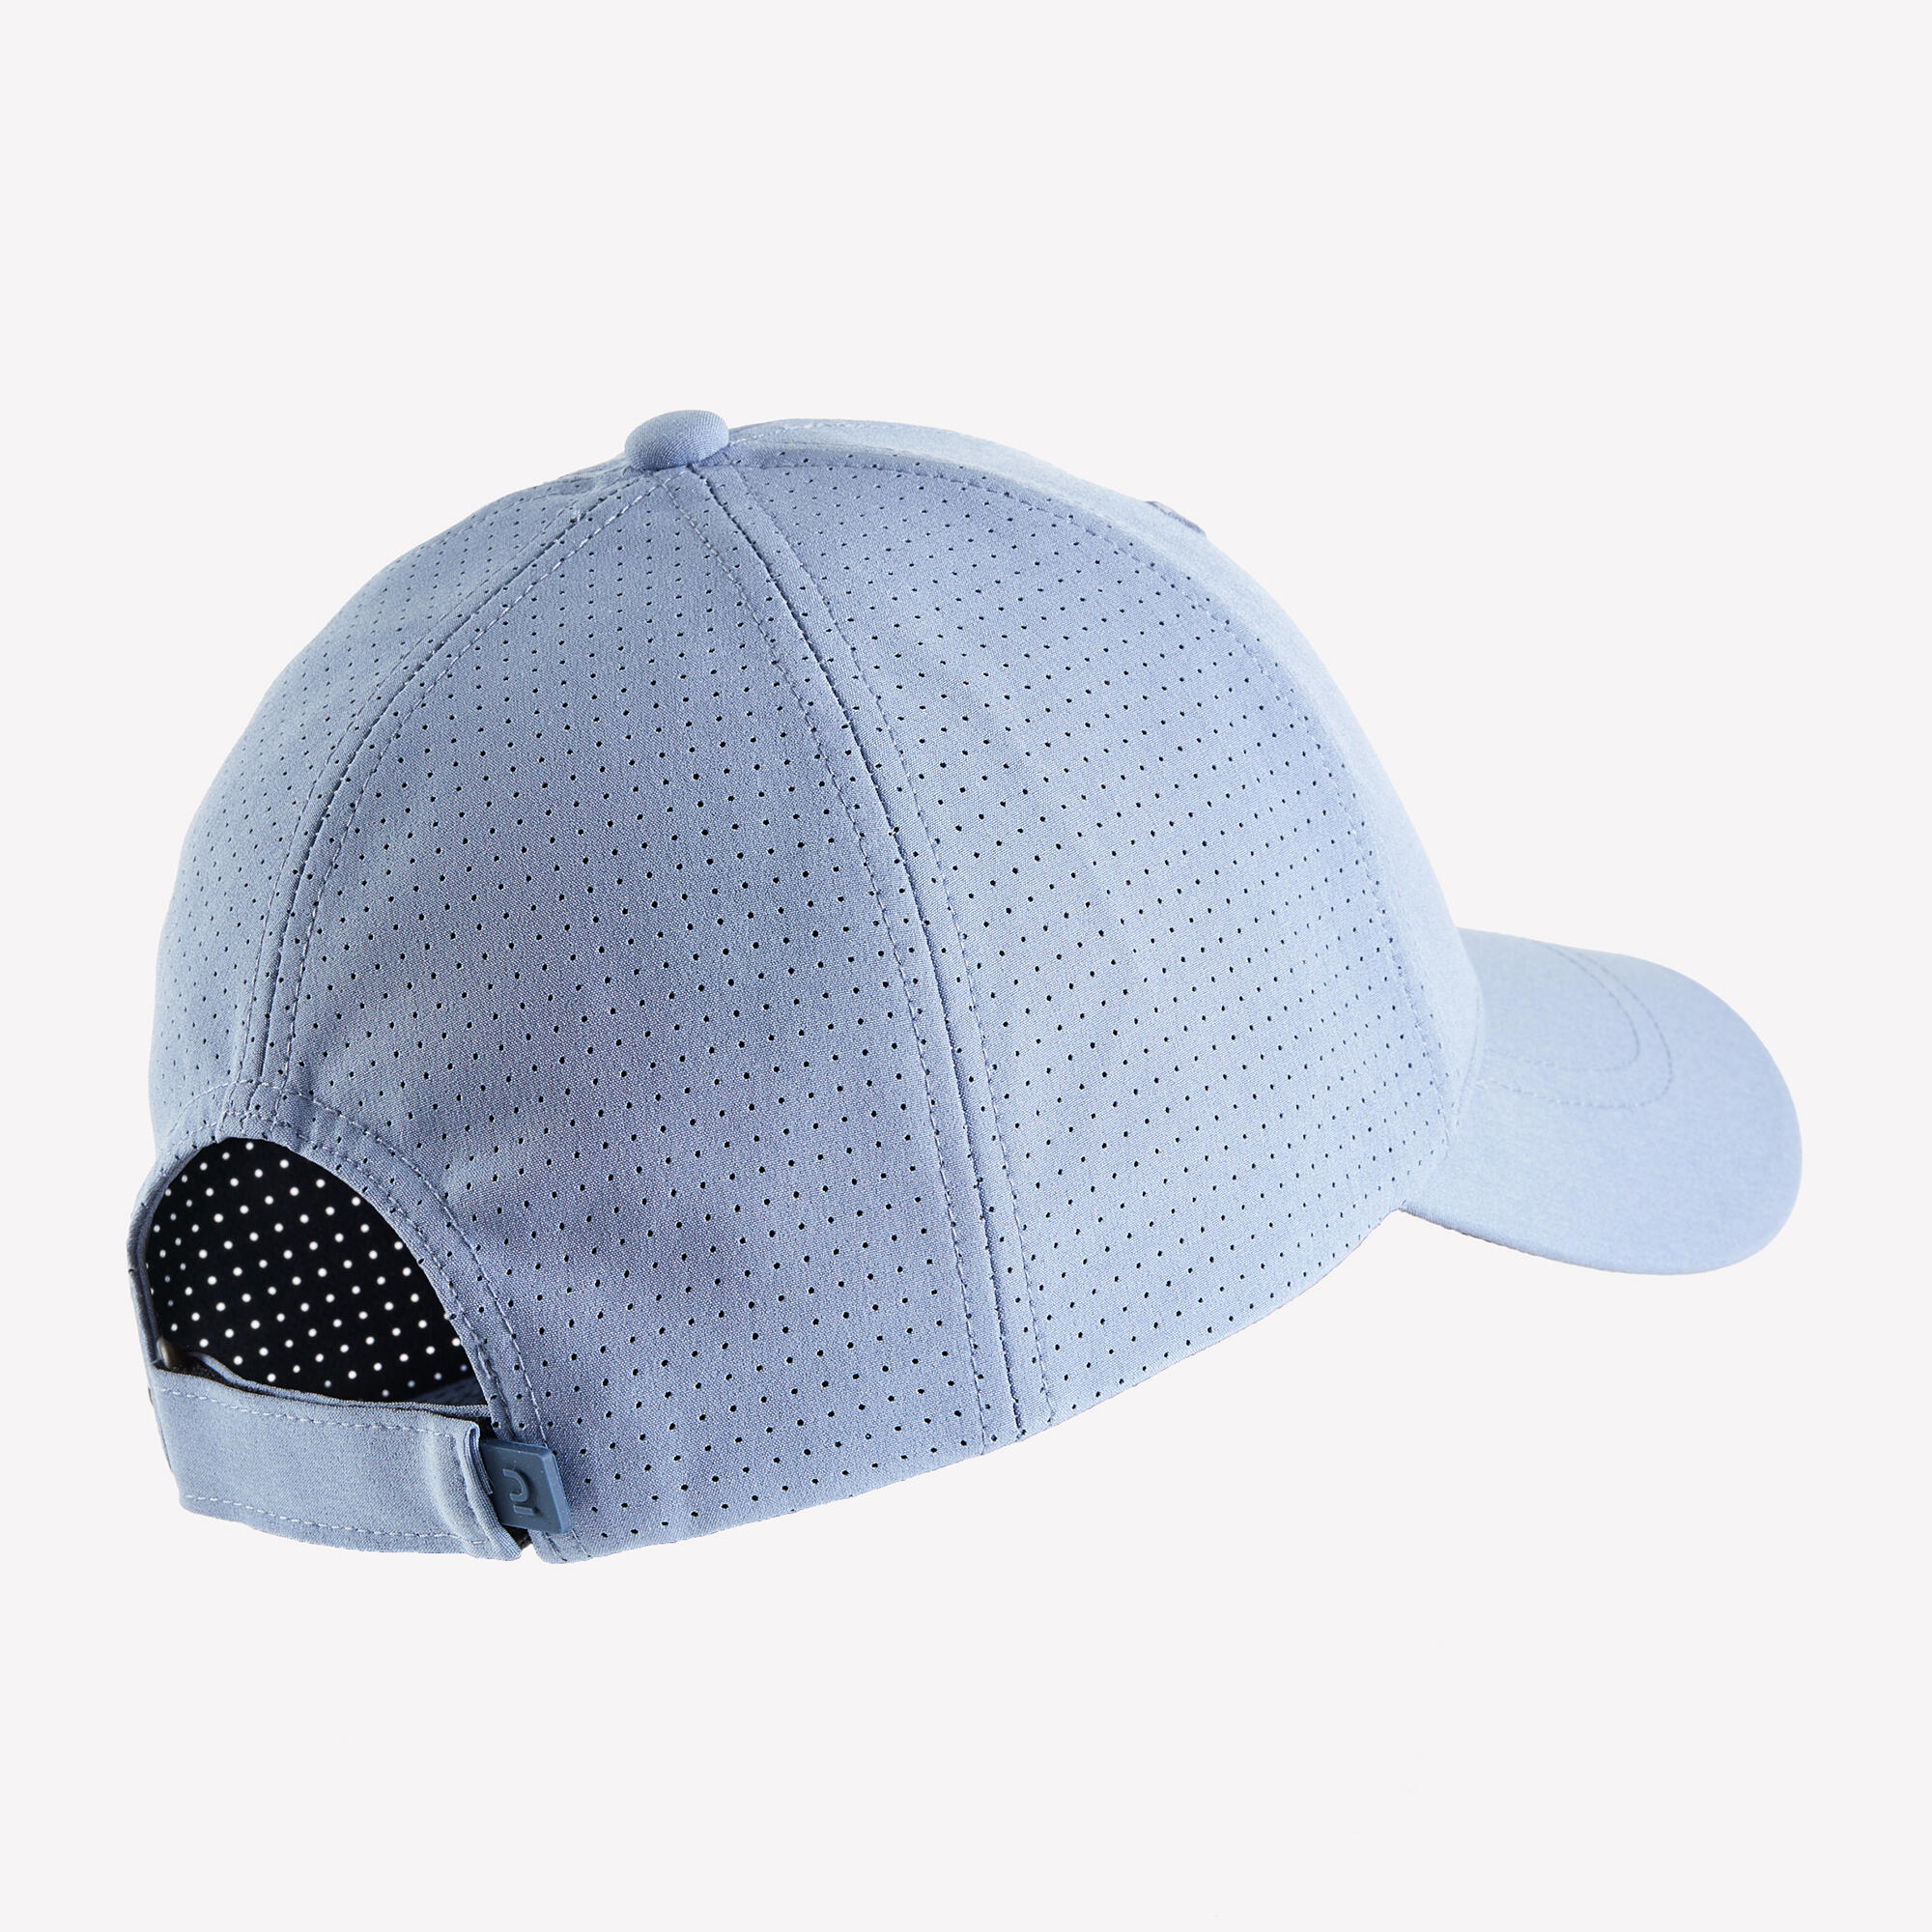 Tennis Cap Size 58 TC 900 - Blue 4/4